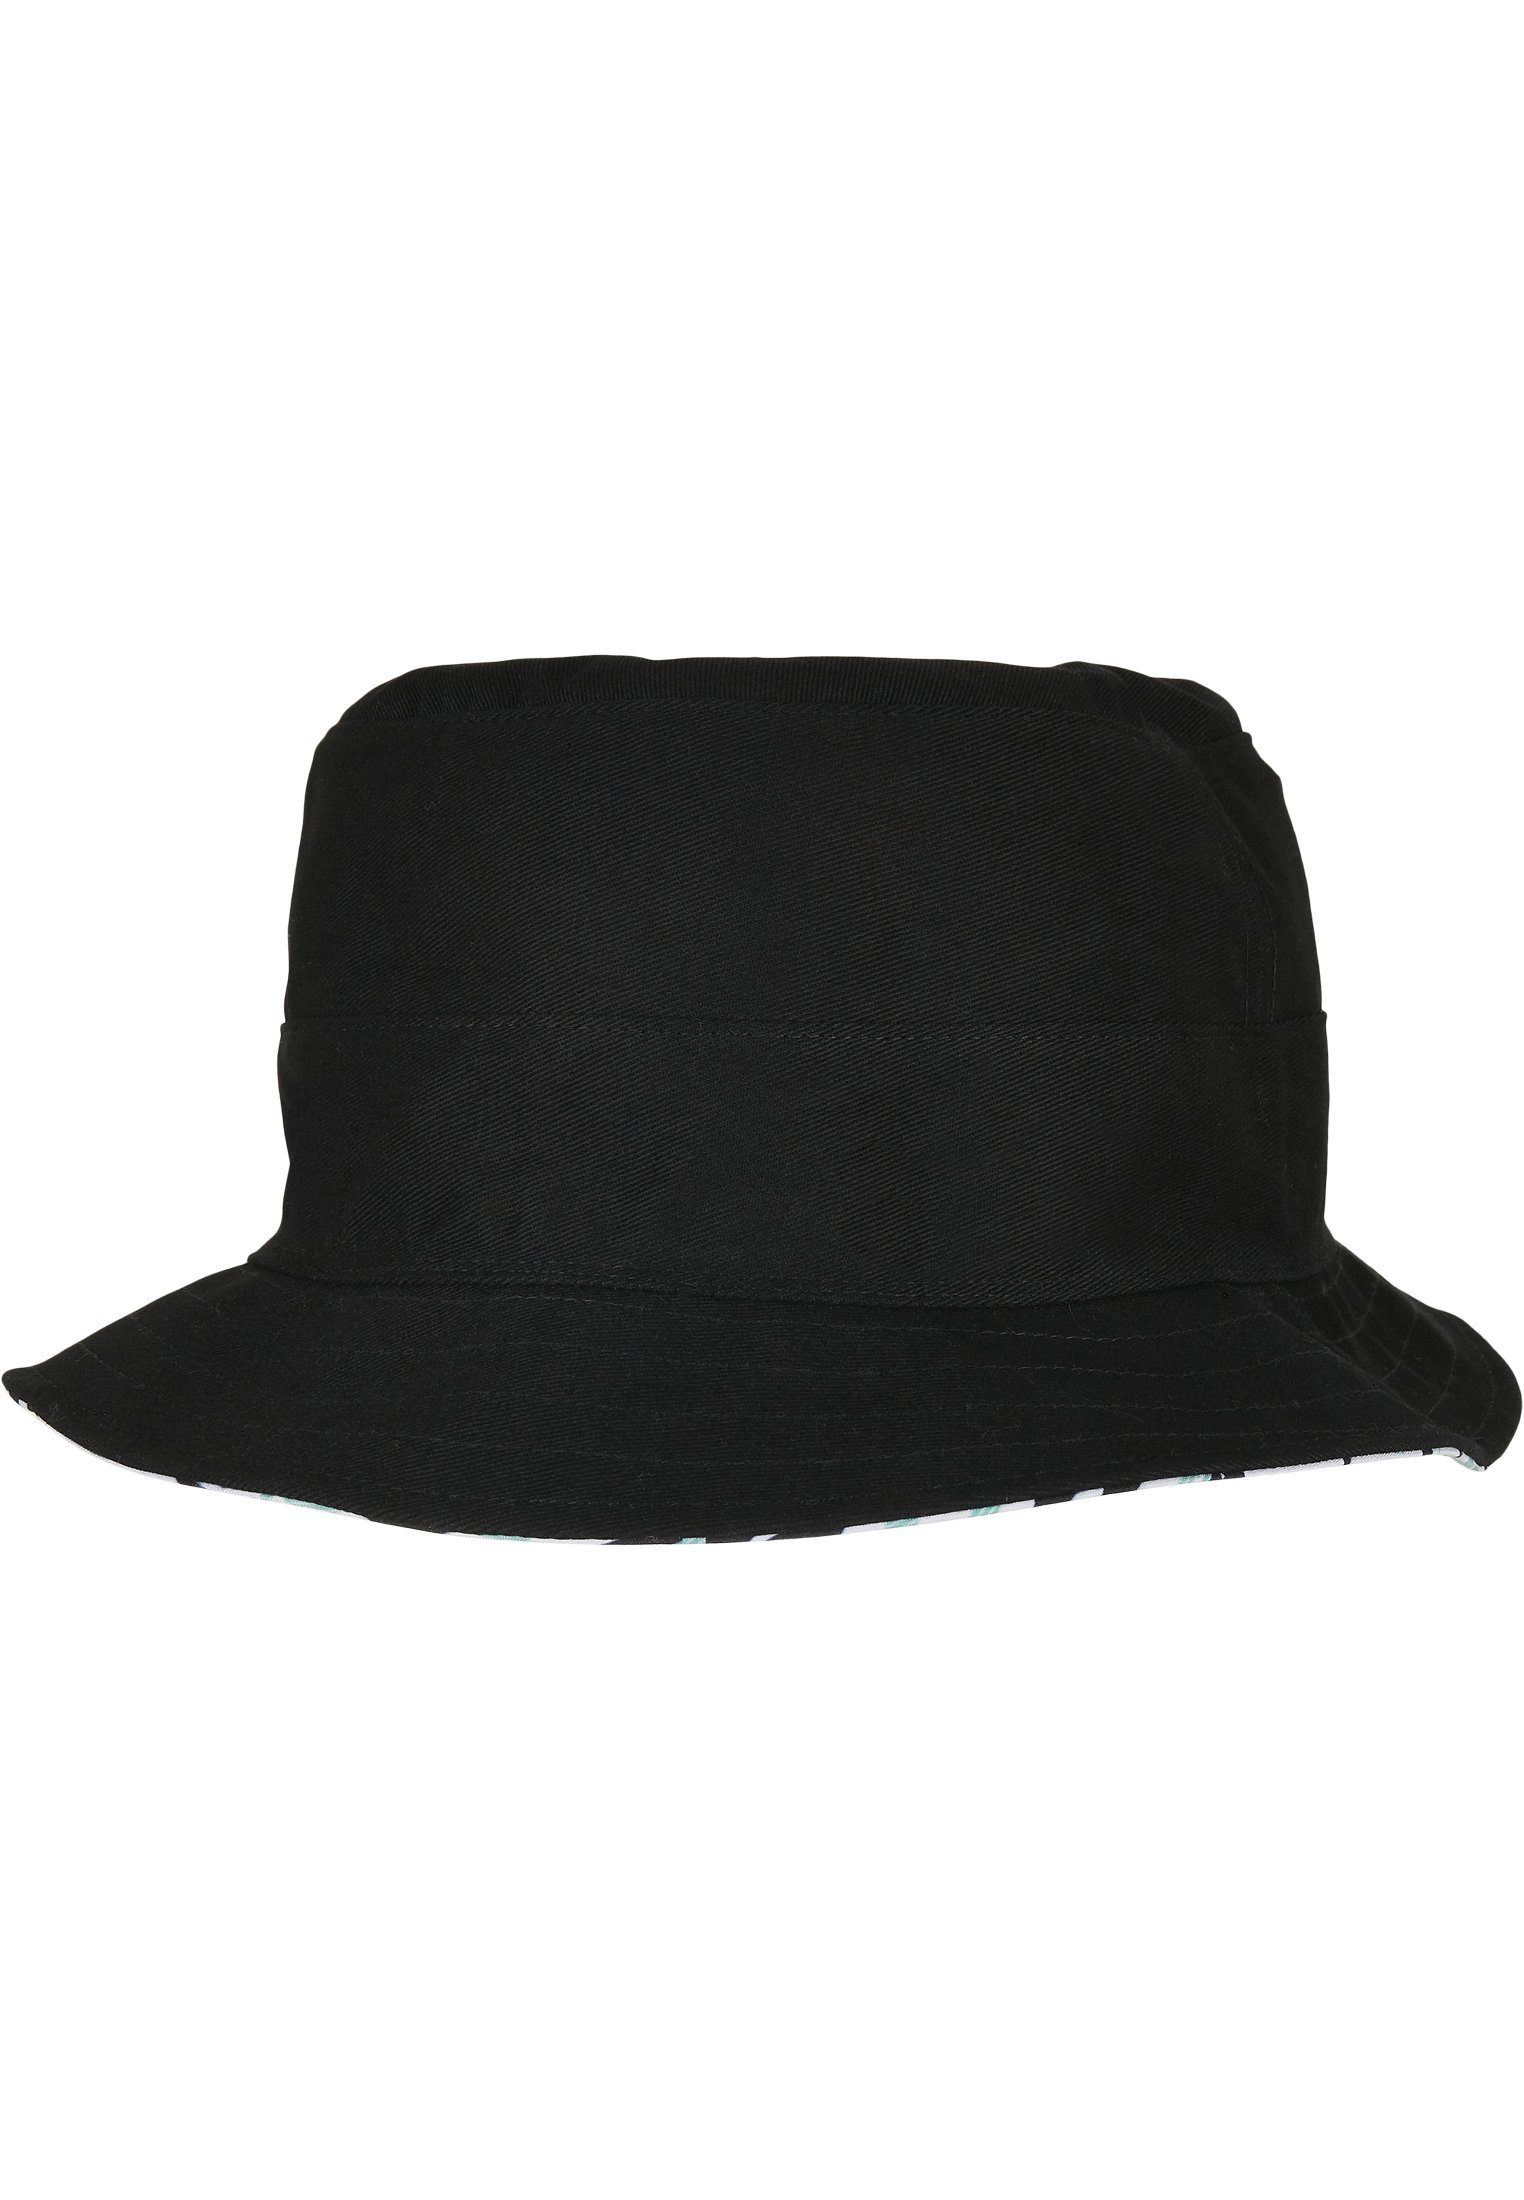 Aztec SONS Summer Hat Bucket Flex Cap Reversible C&S & WL CAYLER